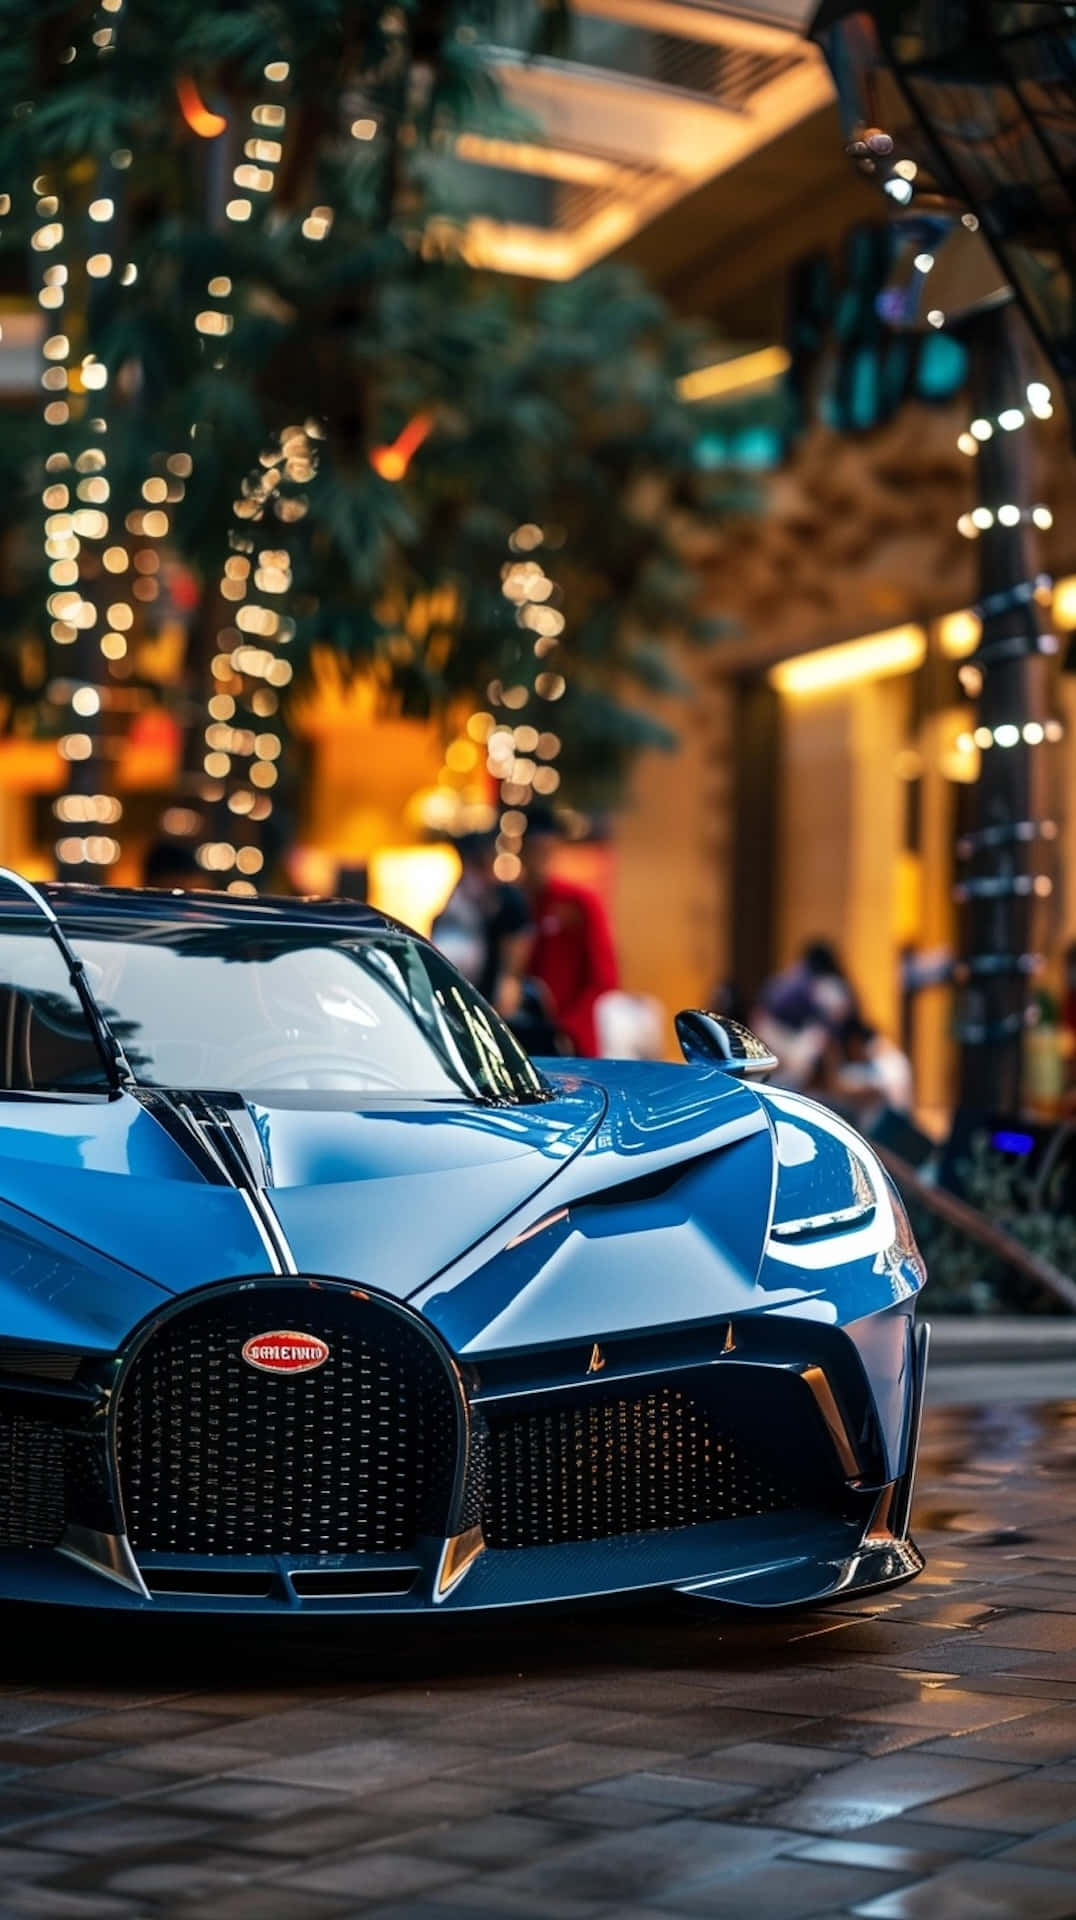 Bugatti Bolide Showcasedat Premium Venue Wallpaper